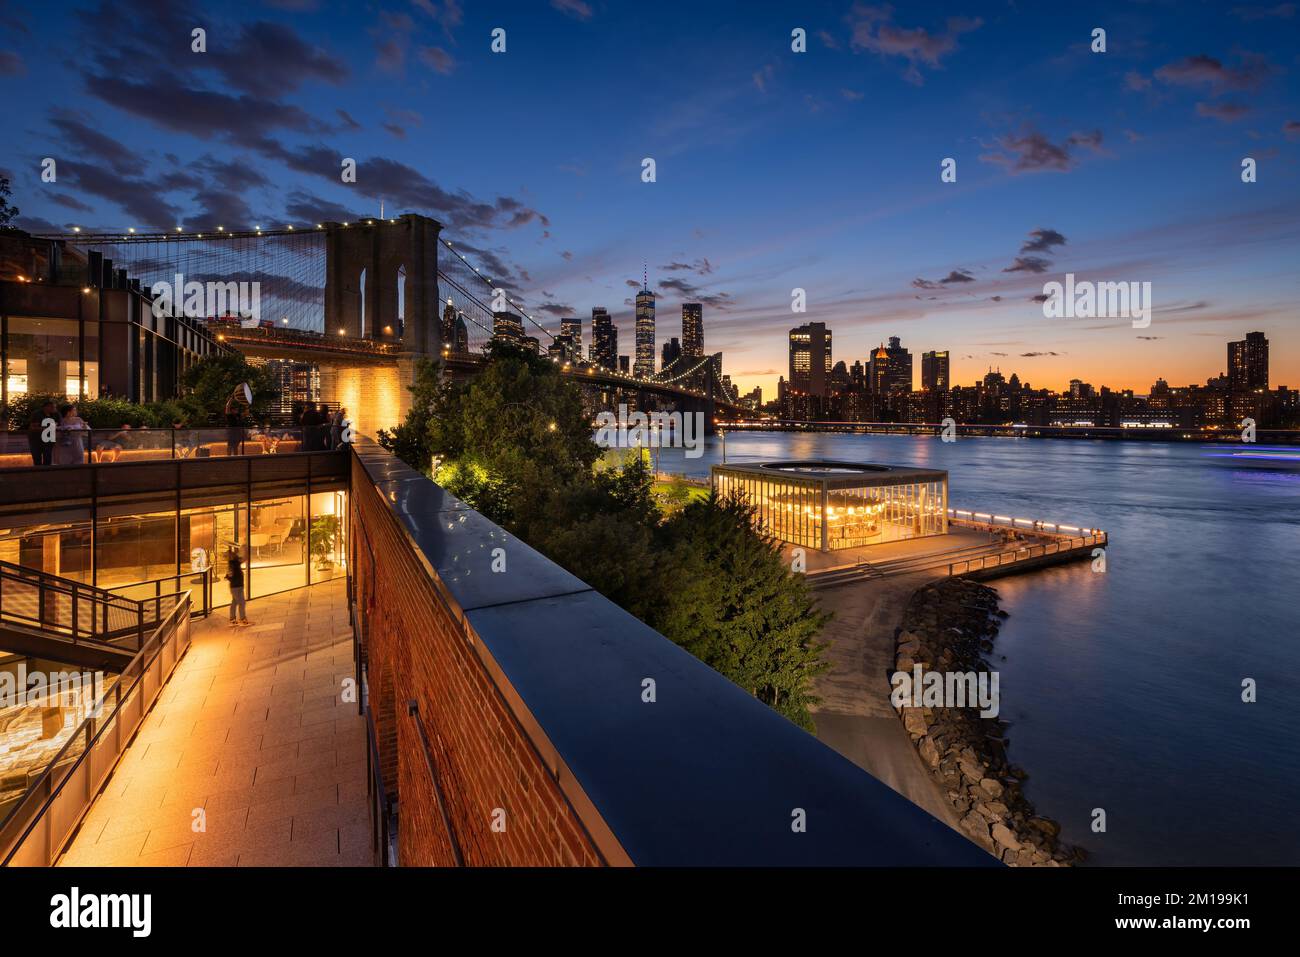 Vue en soirée sur le pont de Brooklyn, les gratte-ciels de Lower Manhattan depuis le centre commercial Empire Stores, DUMBO, Brooklyn, New York City Banque D'Images